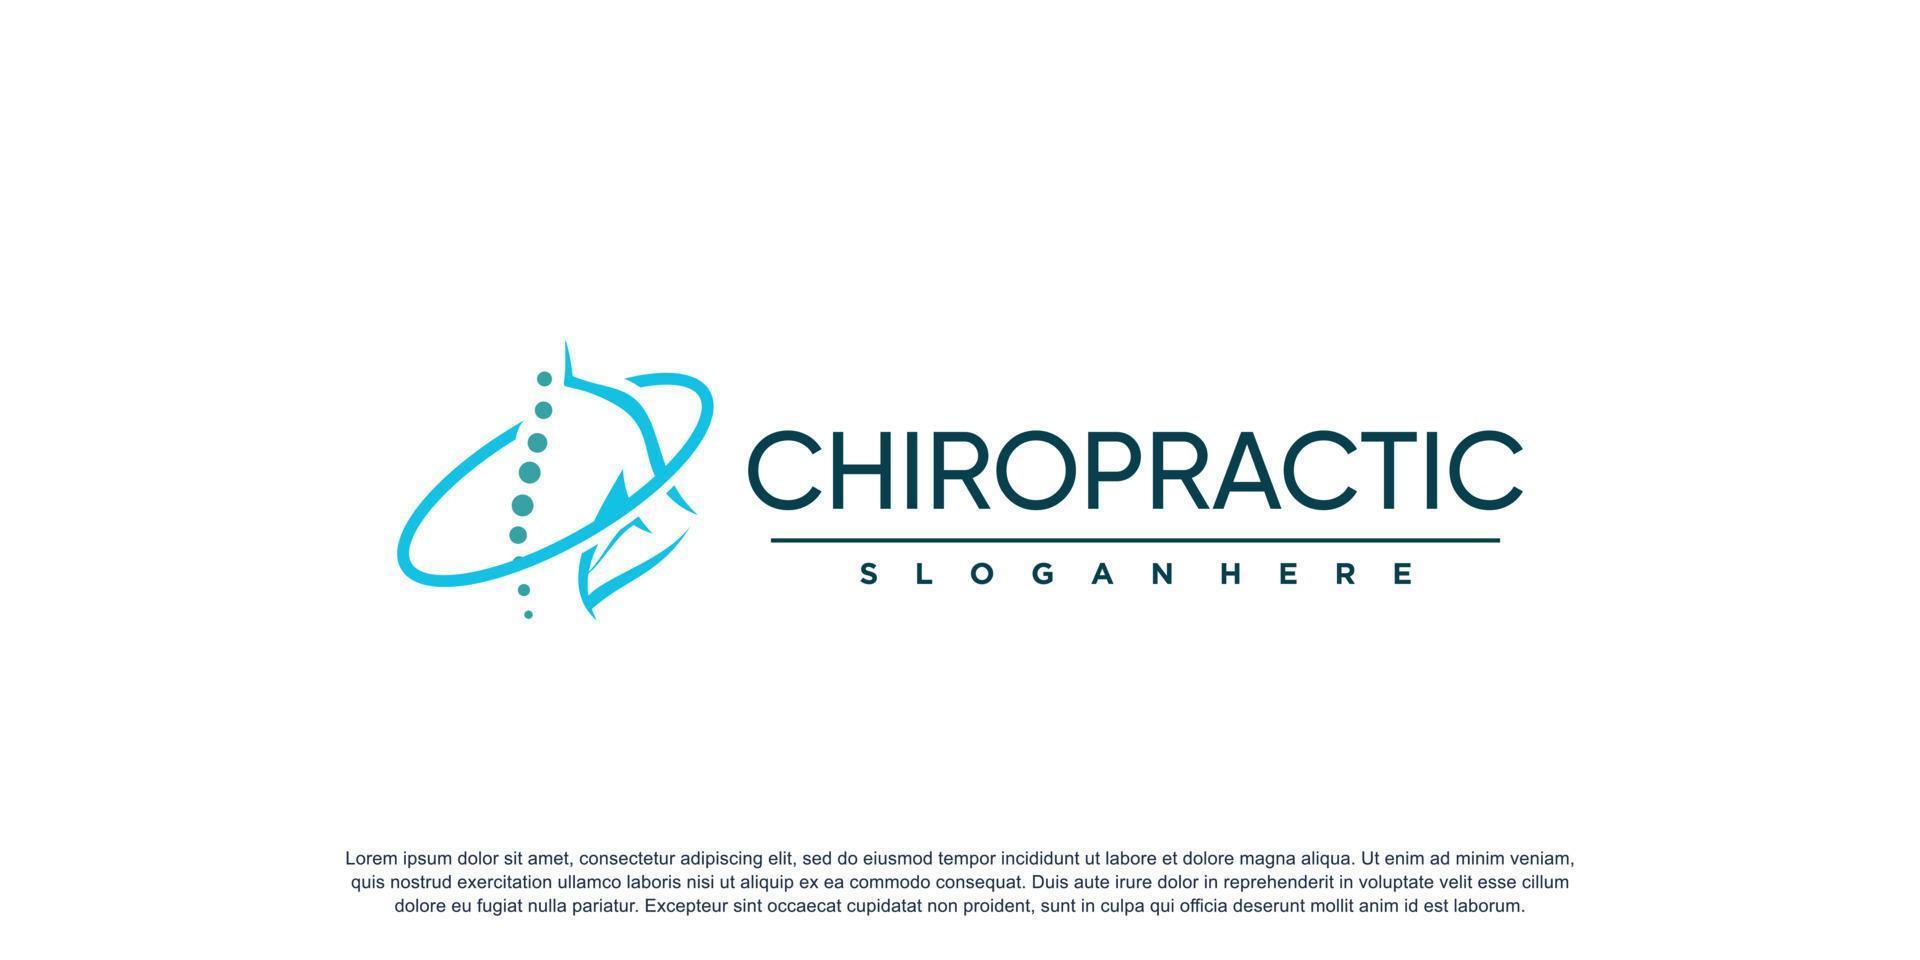 logotipo quiropráctico para masajes y negocios con concepto de elemento creativo vector premium